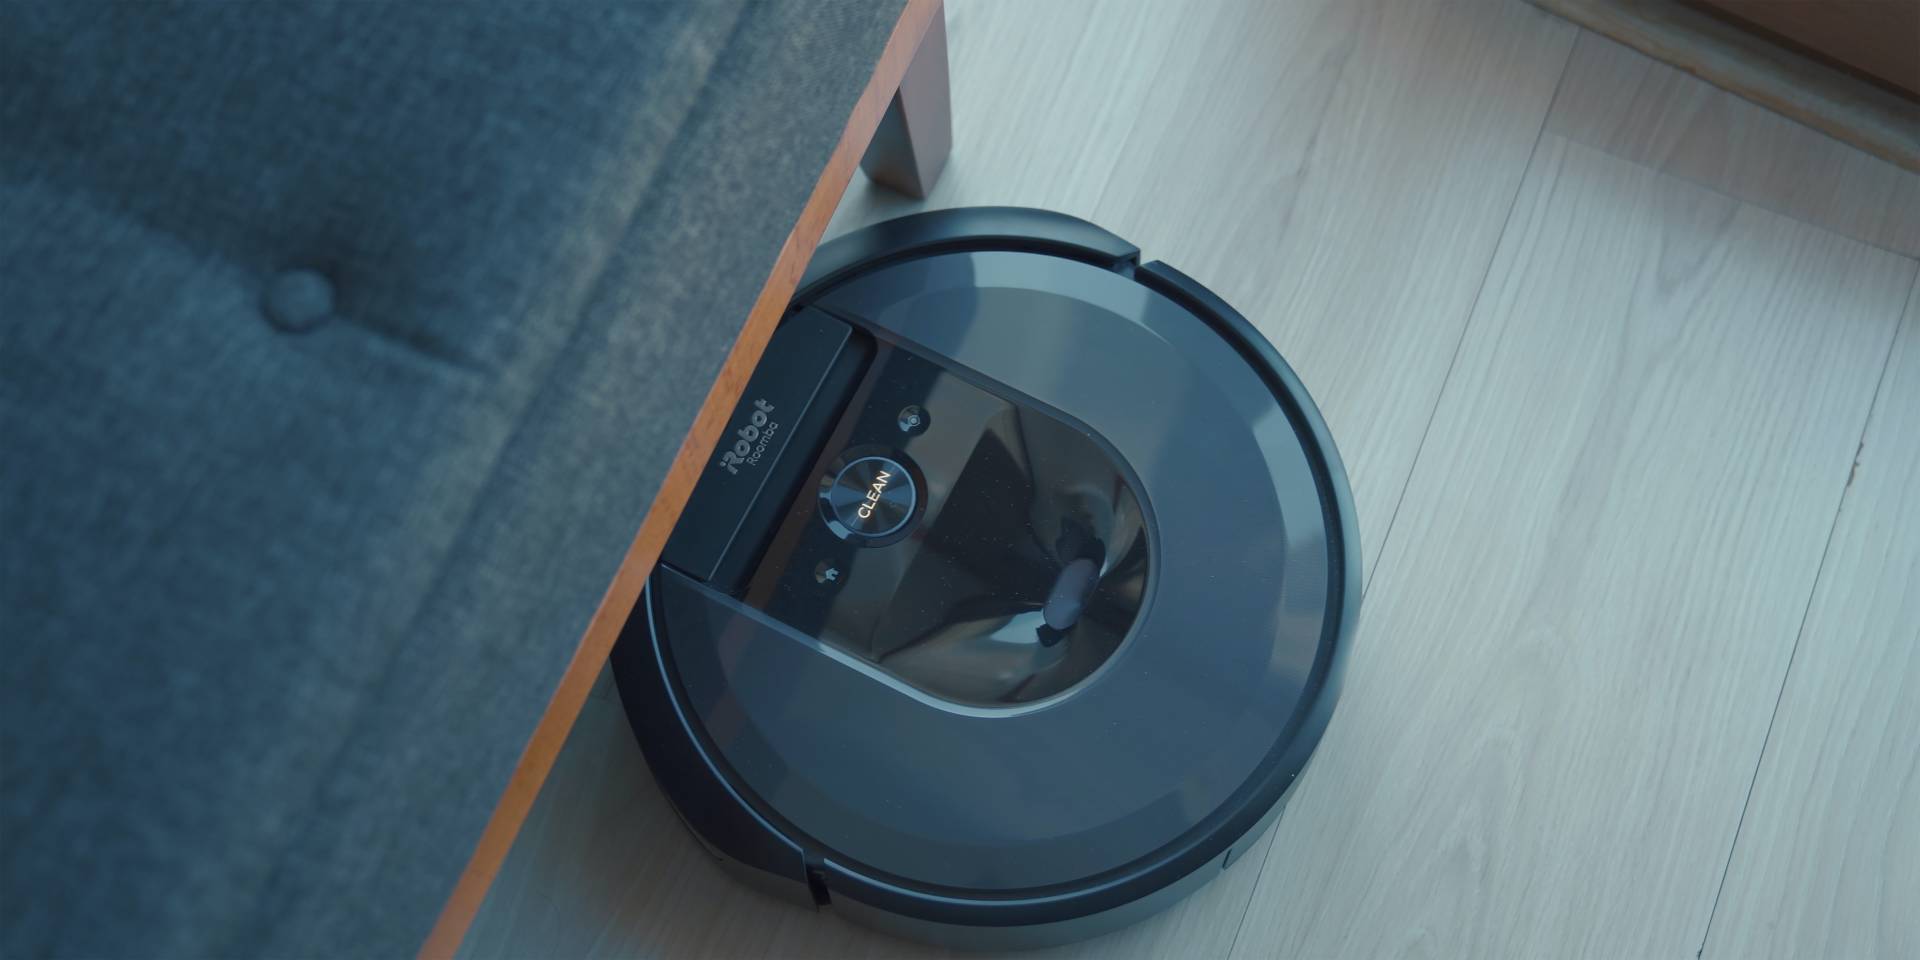 Roomba-Maker iRobot's Shares Plunge After EU Regulators Question